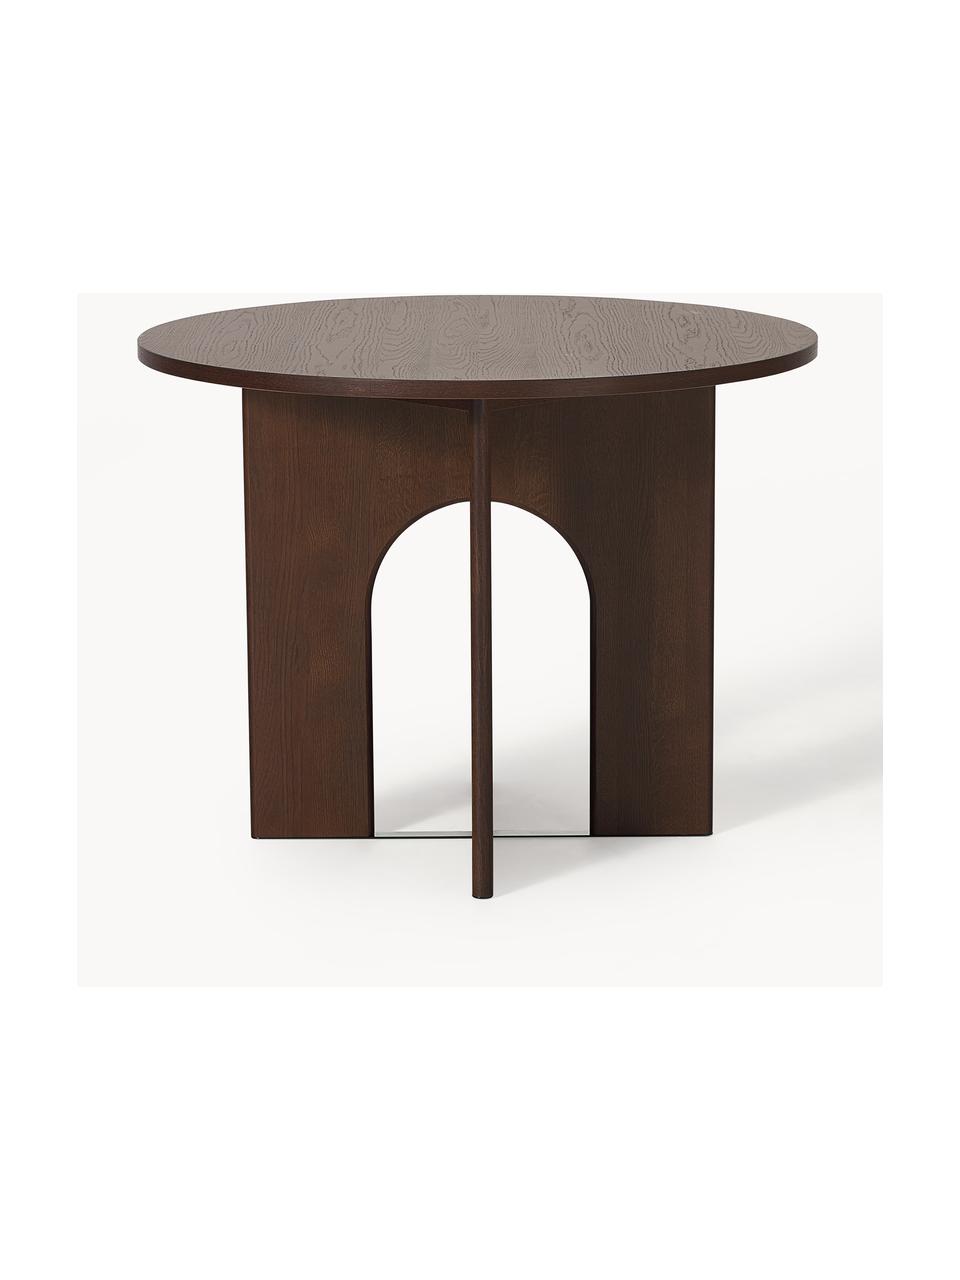 Okrągły stół do jadalni Apollo, różne rozmiary, Blat: fornir z drewna dębowego , Nogi: drewno dębowe lakierowane, Drewno dębowe lakierowane na ciemnobrązowo, Ø 100 cm